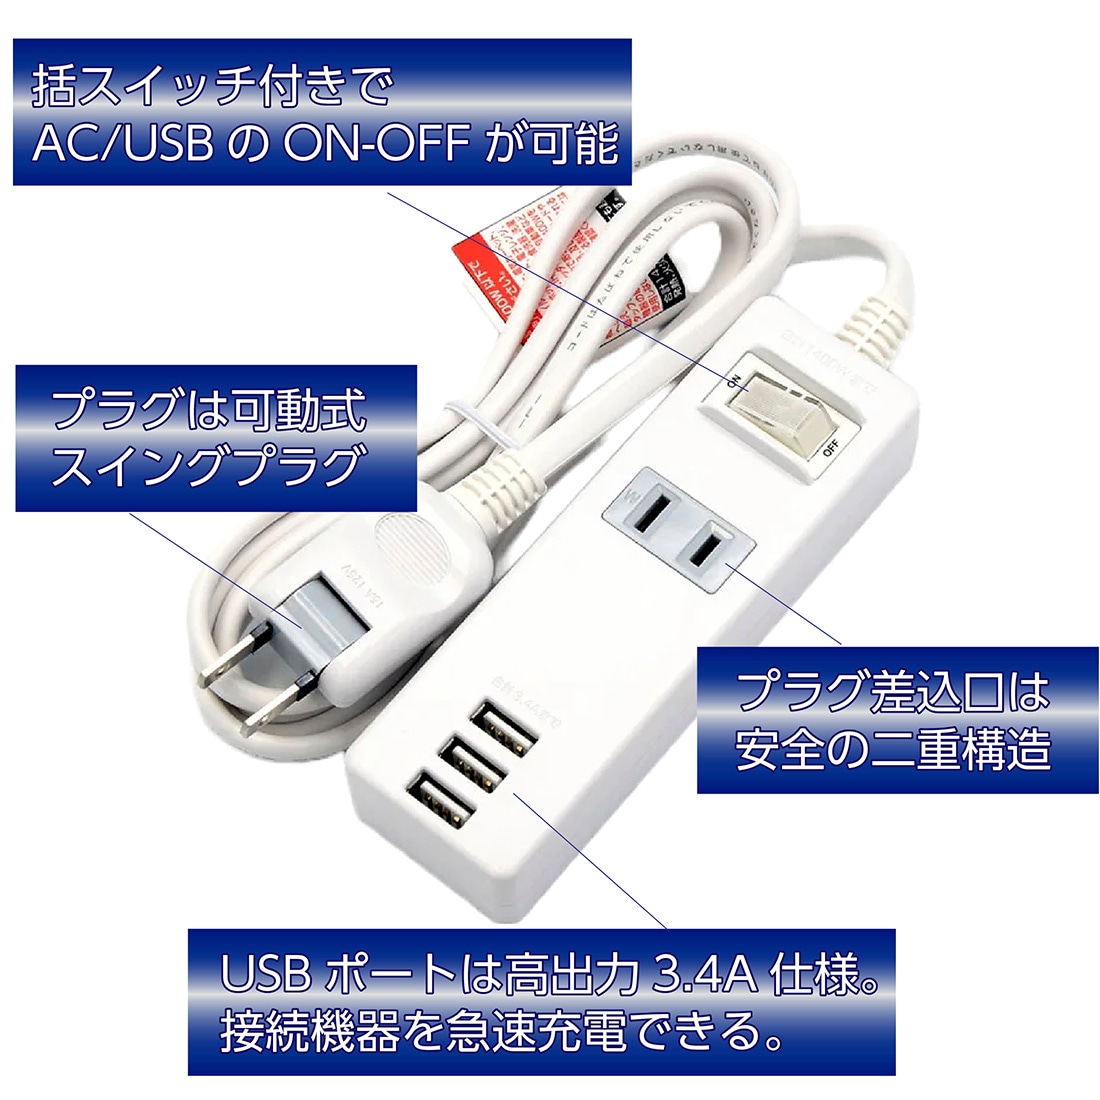 10%OFF 【即配】SK-3USB1.5 急速充電USBコンセント コード長さ1.5m USB 3ポート ACアダプタ1個口 星光商事 /  スターライト | 在庫処分SALE | プロポチ 公式オンラインショップ